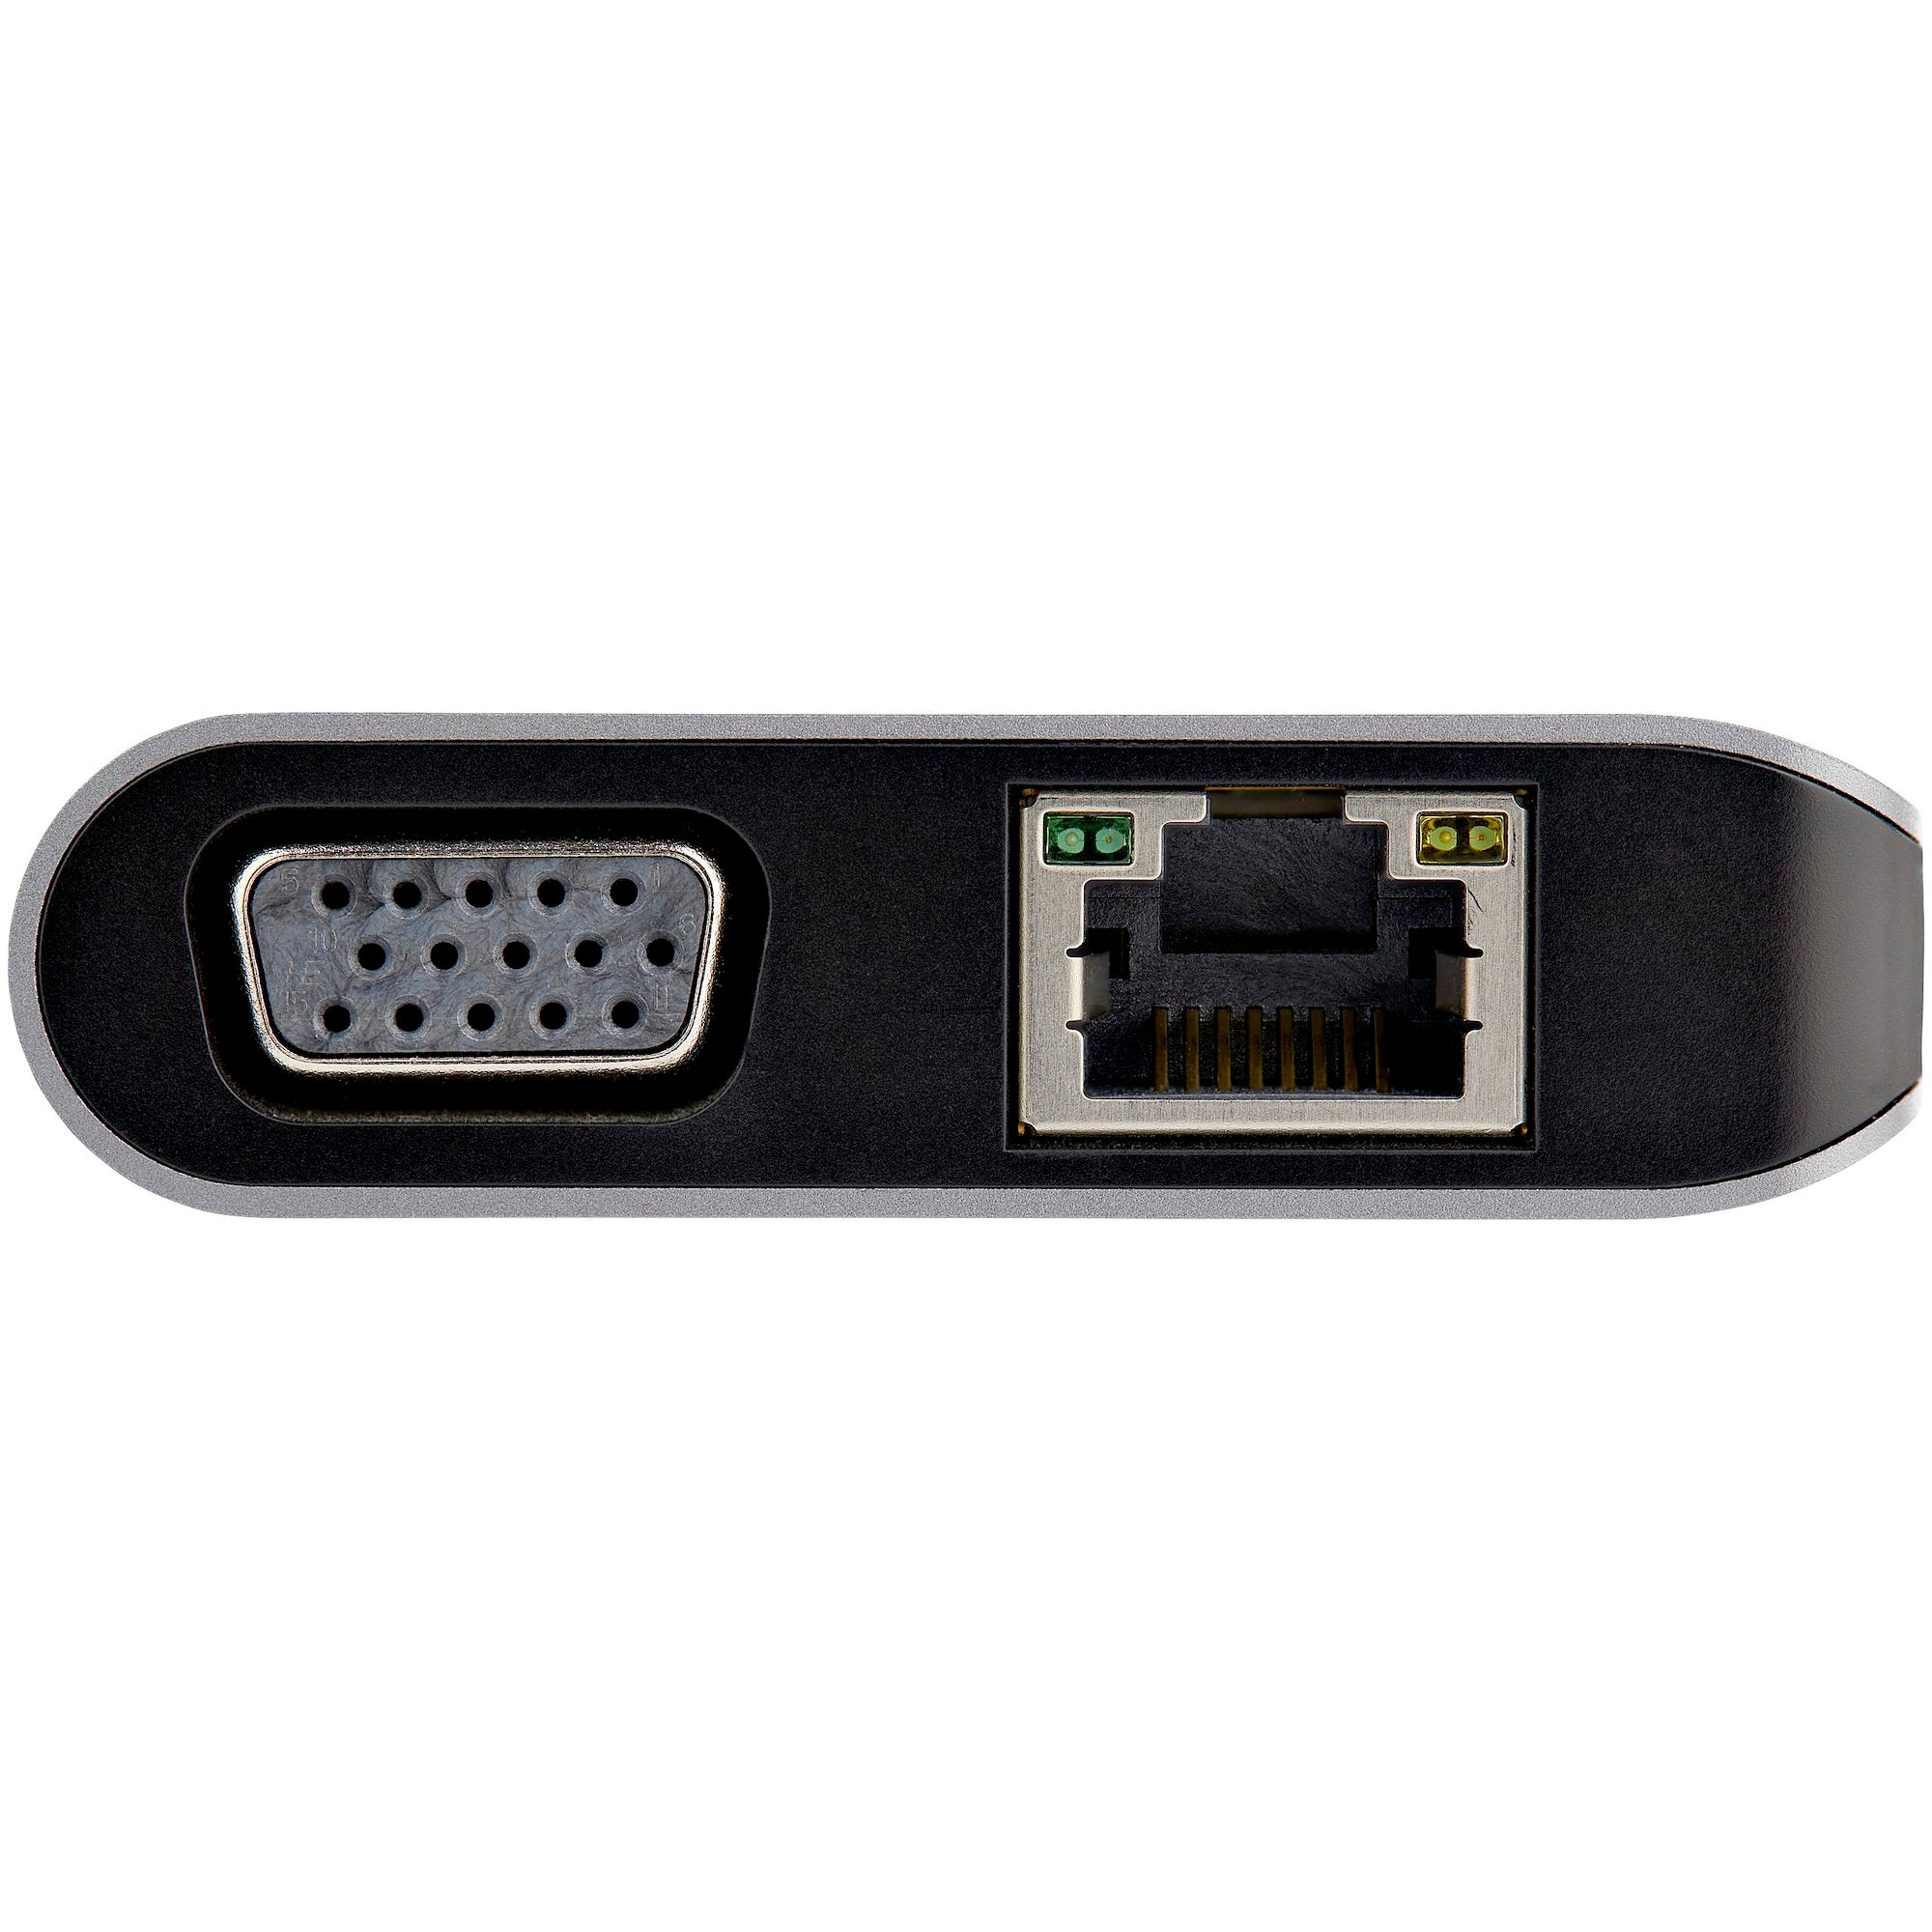 Adaptador Multipuertos USB-C - Mini Docking Station para Viajes con HDMI de 4K o VGA de 1080p - con Hub Ladrón USB 3.0 - PD de 100W - SD - Ethernet - Audio y Micrófono - Replicador de Puertos Portátil